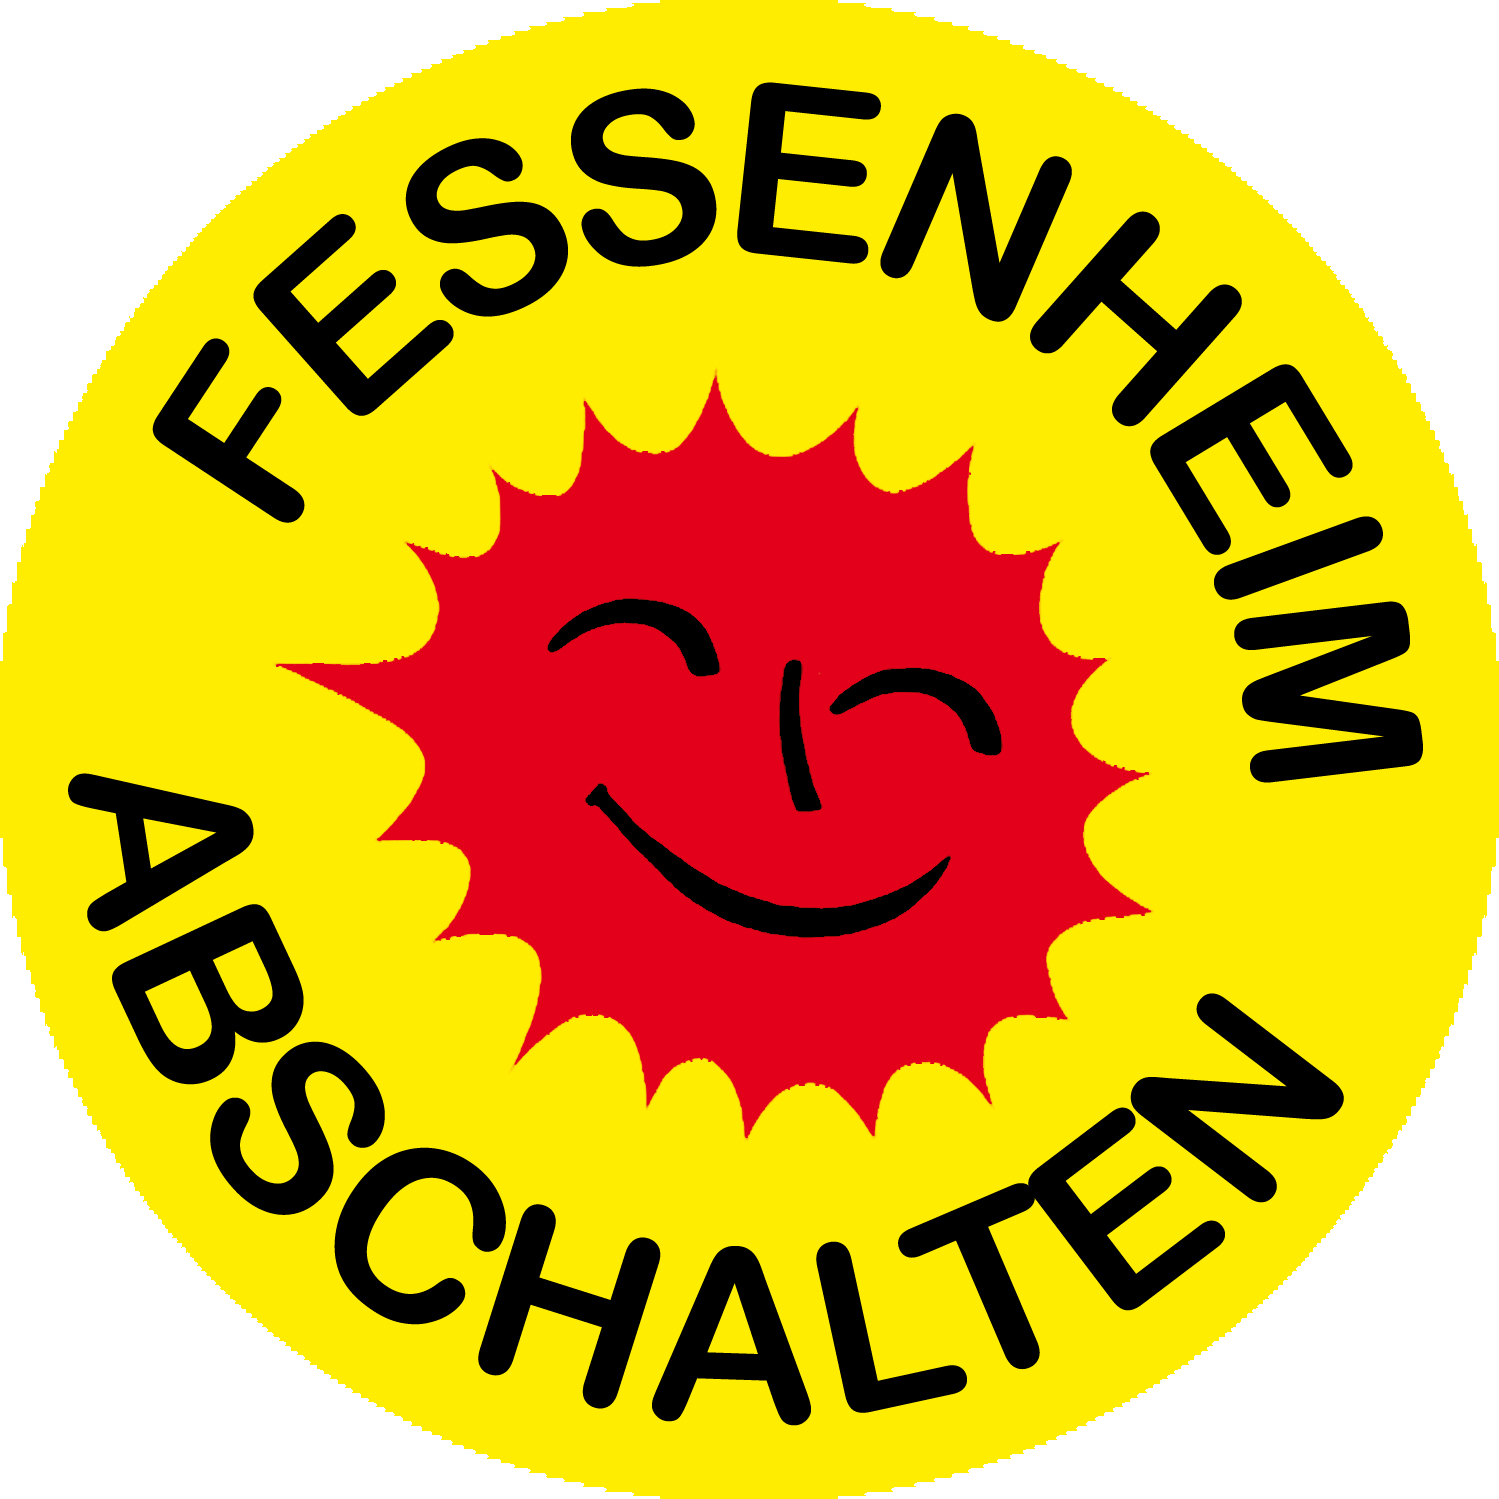 Pressemitteilung: Resolution: Keine neuen Atomanlagen im Elsass